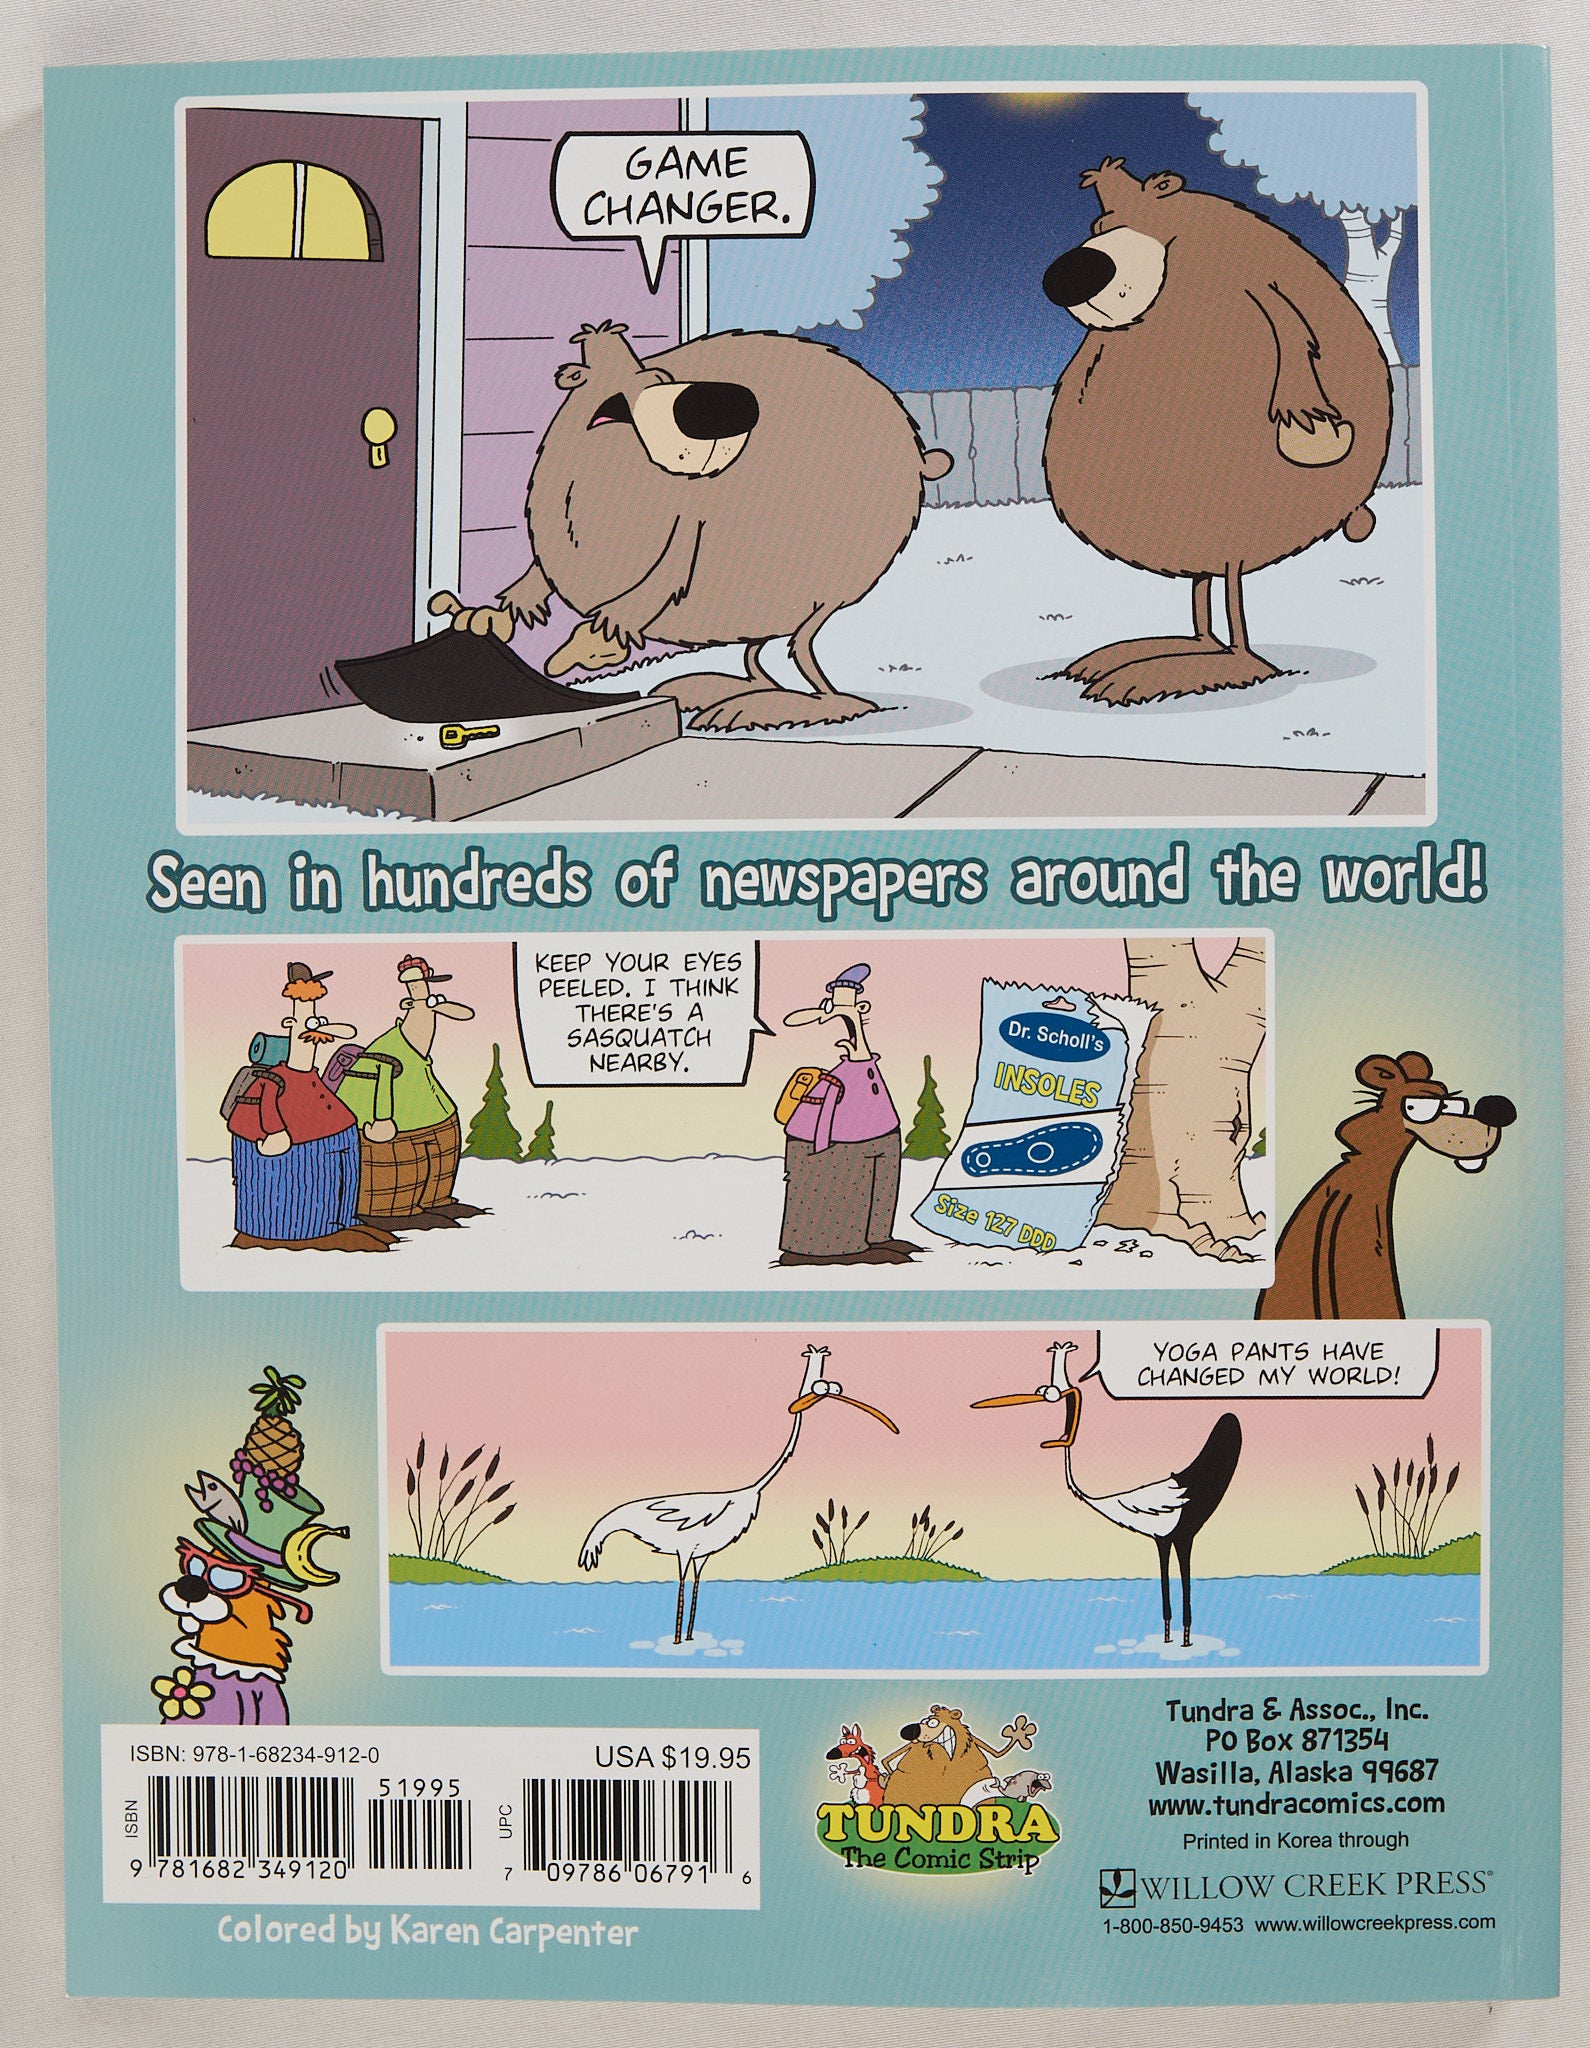 Tundra Fashionably Funny Comics by Chad Carpenter